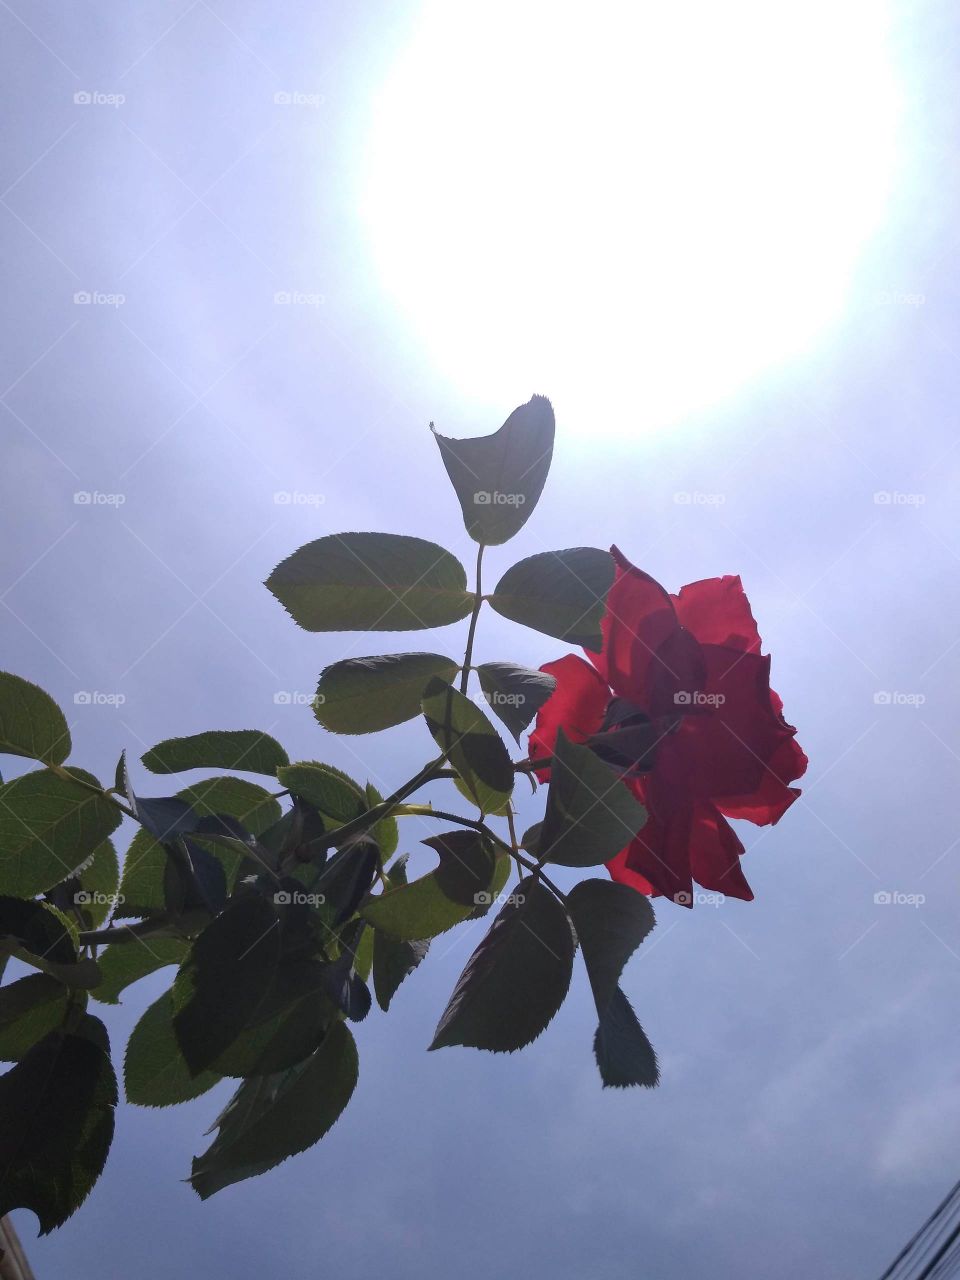 a mawar flower